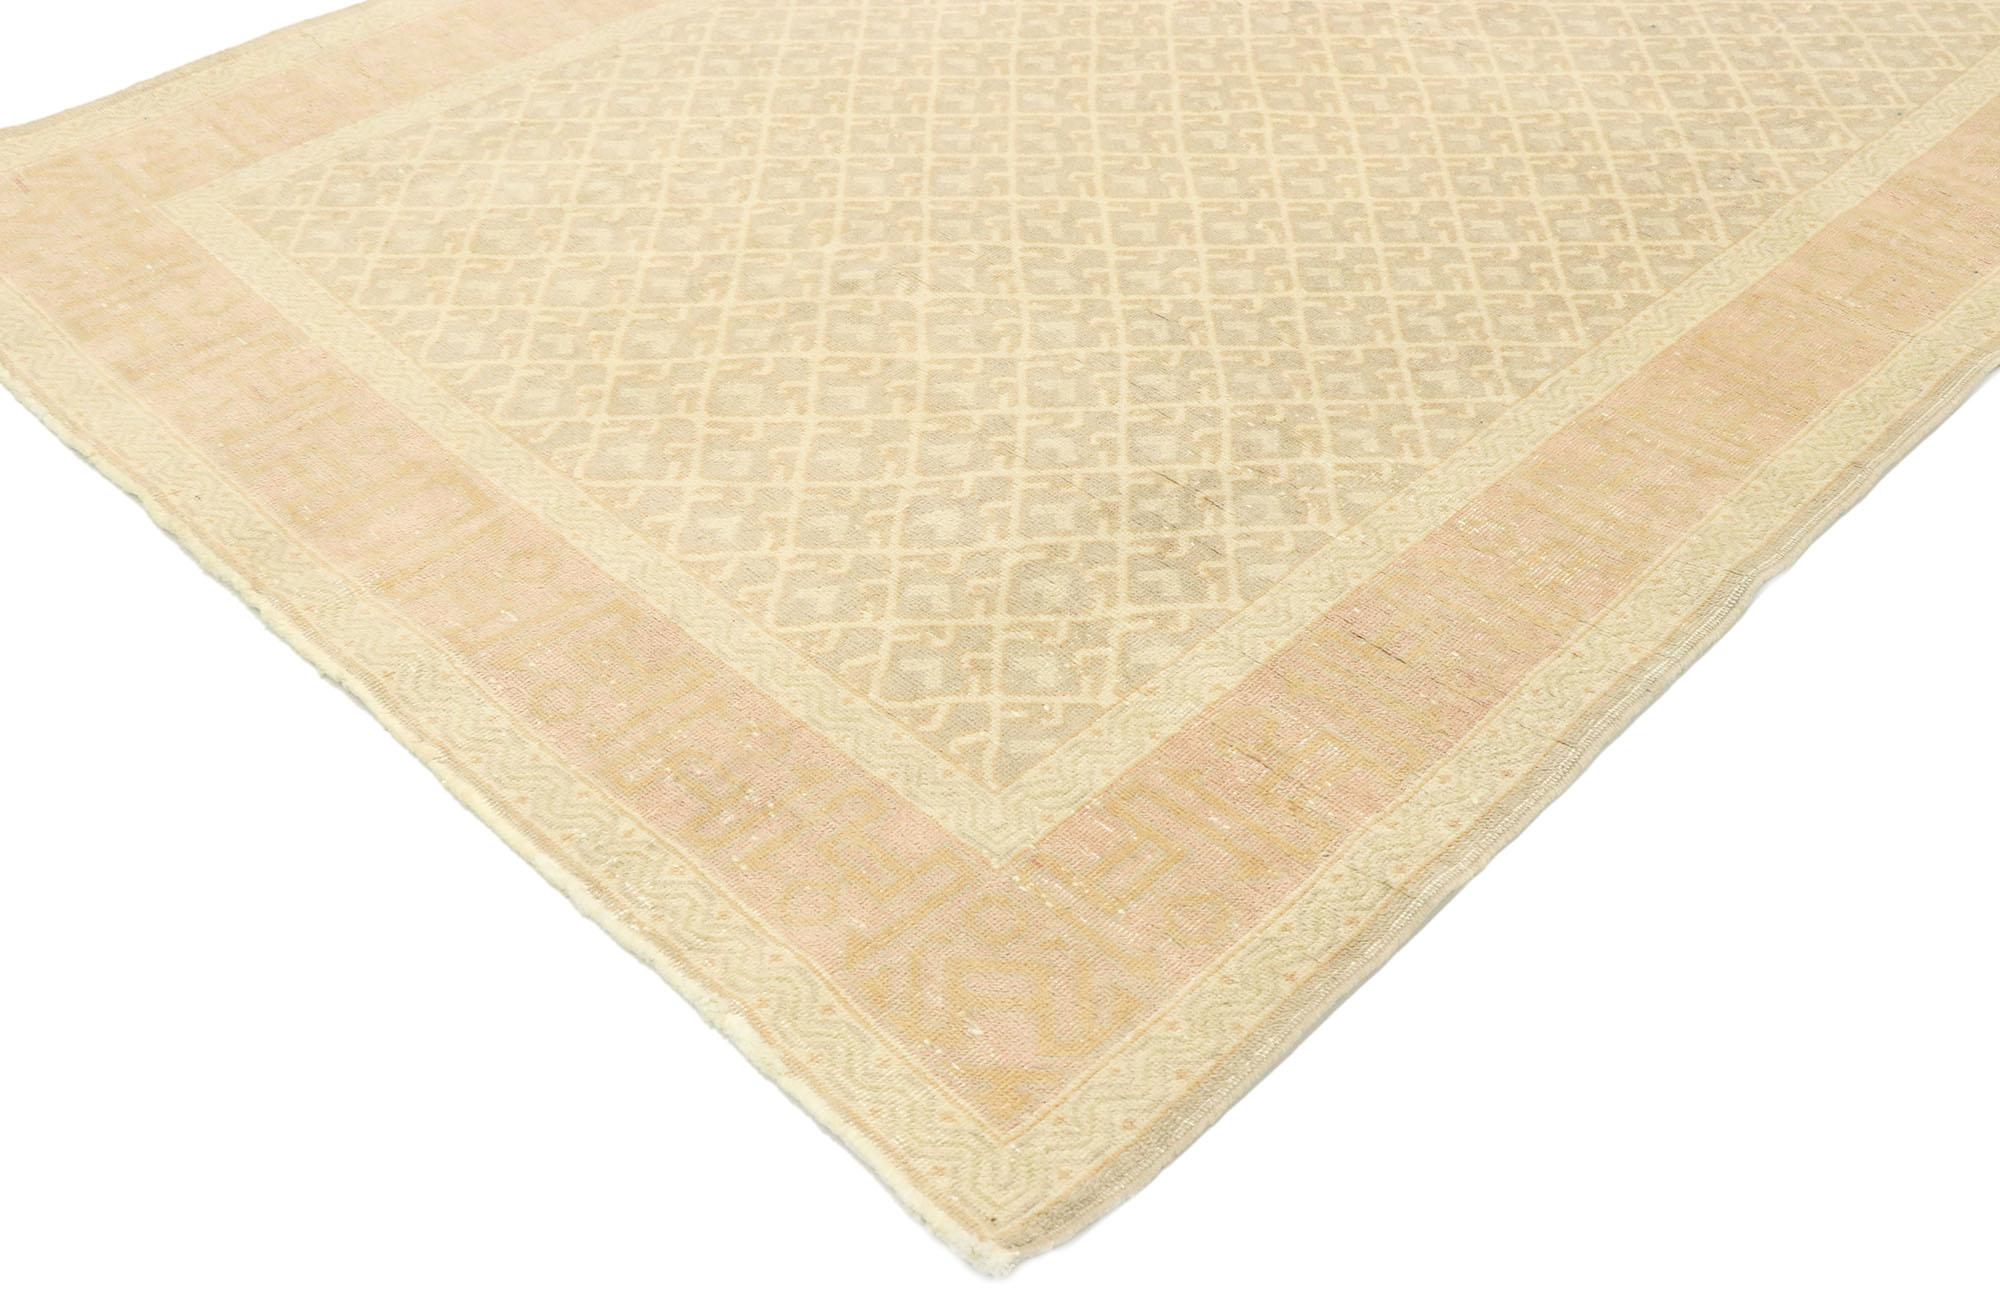 53072 Türkischer Sivas-Teppich im romantischen georgianischen Stil. Mit seiner ausgewogenen Symmetrie und seinen harmonischen Farbtönen verkörpert dieser handgeknüpfte türkische Sivas-Teppich aus Wolle einen romantischen georgischen Stil. Die